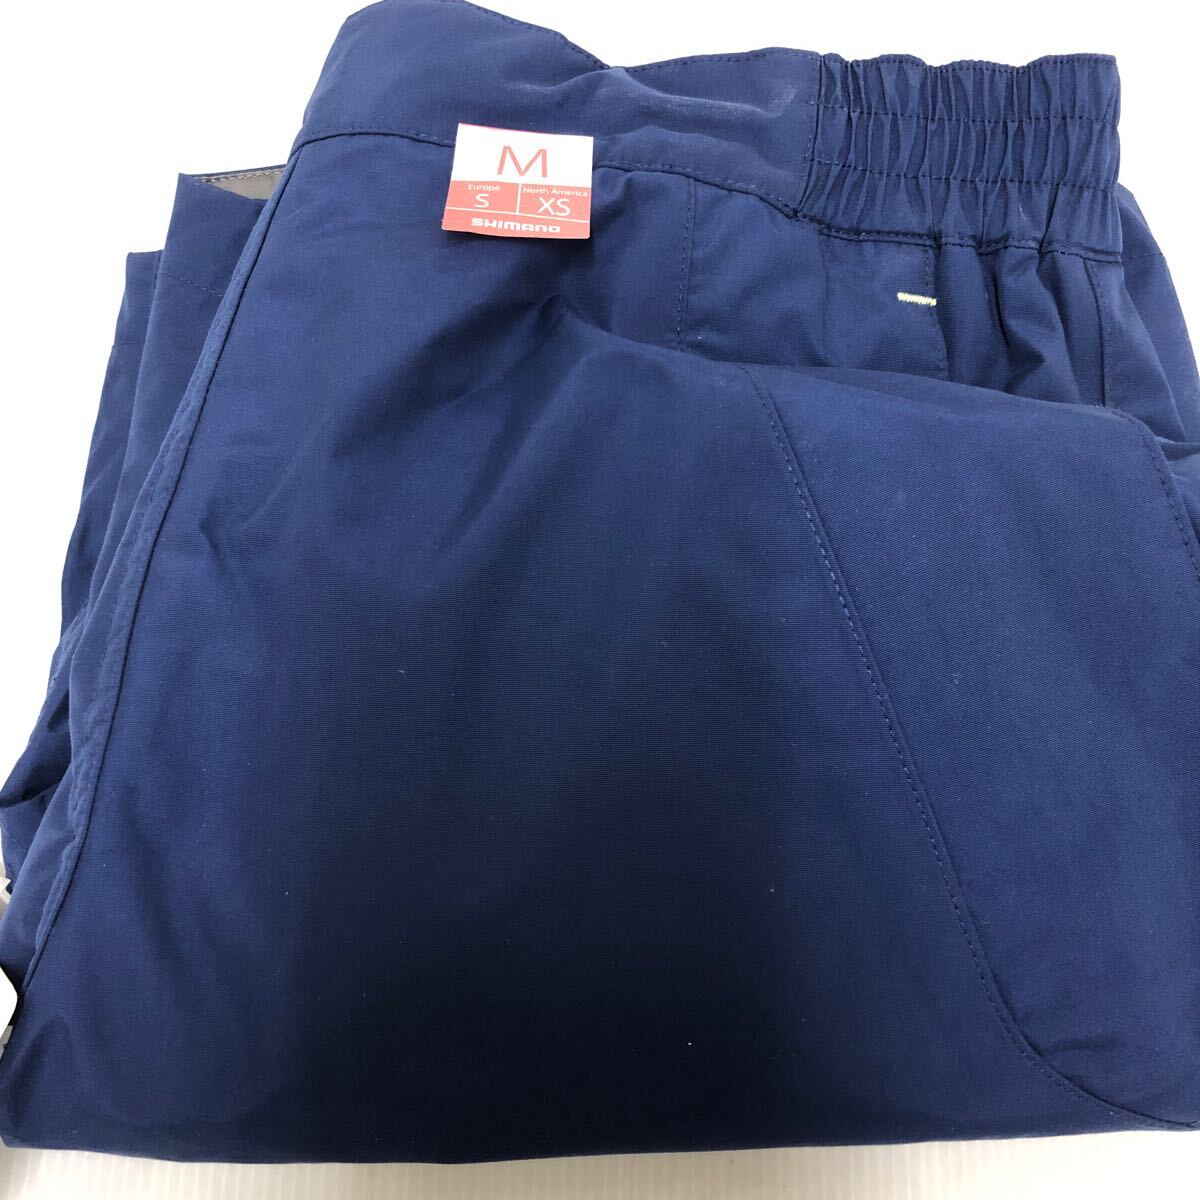  Shimano DS шорты RA-020Q темно-синий [ новый товар не использовался товар ]60 размер отправка 60396